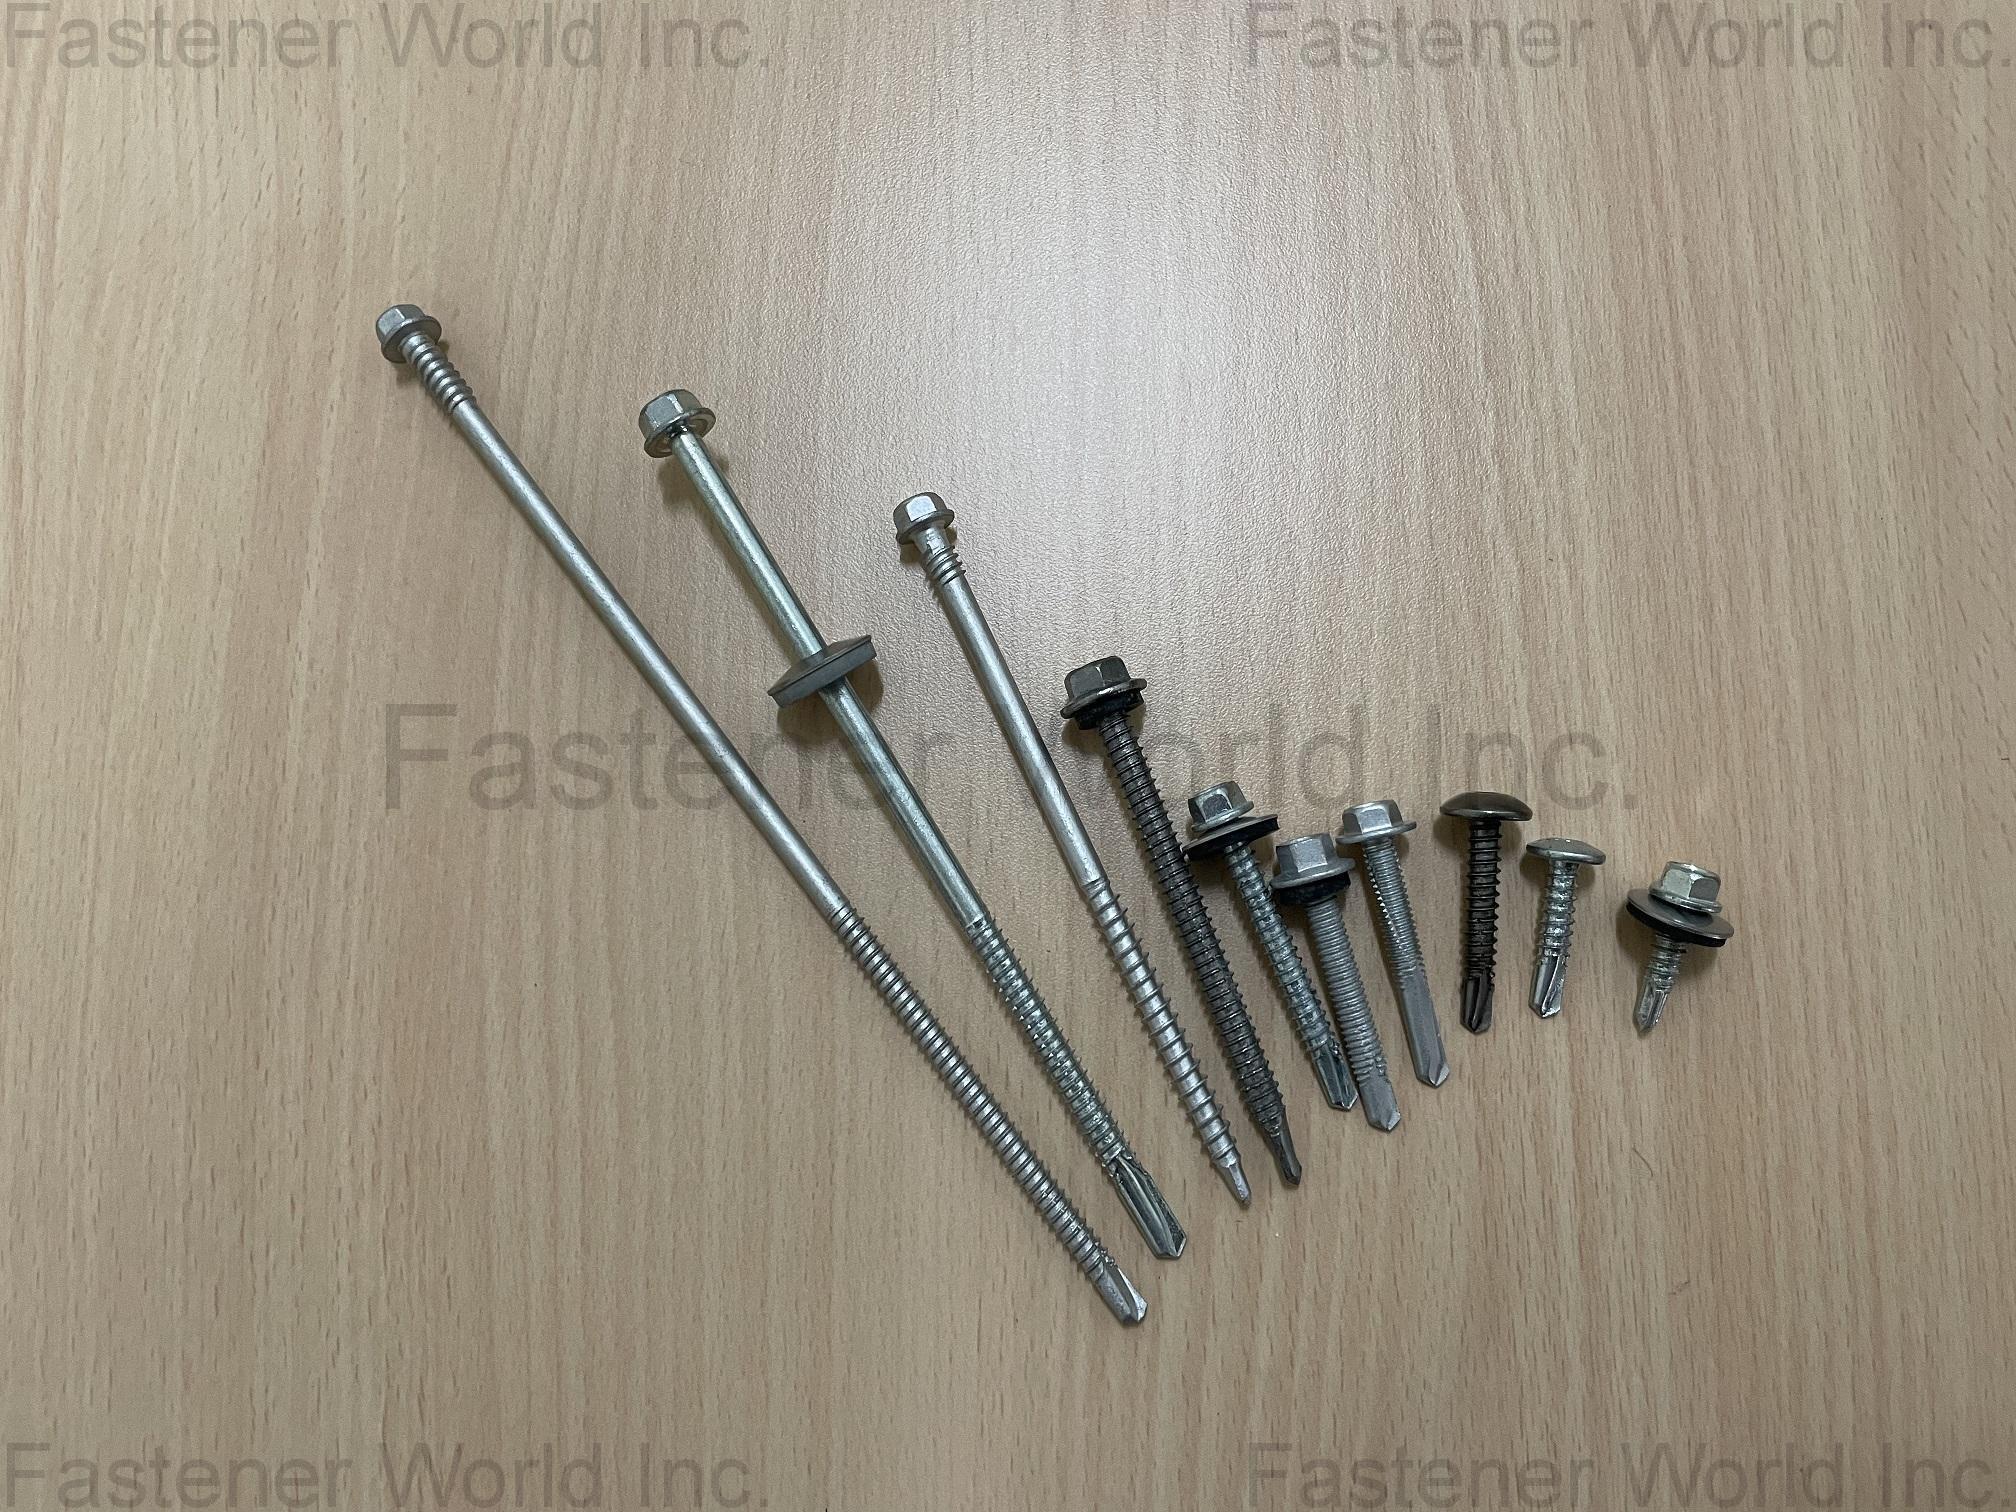 HONG TENG HARDWARE CO., LTD. , Bi-metal screws